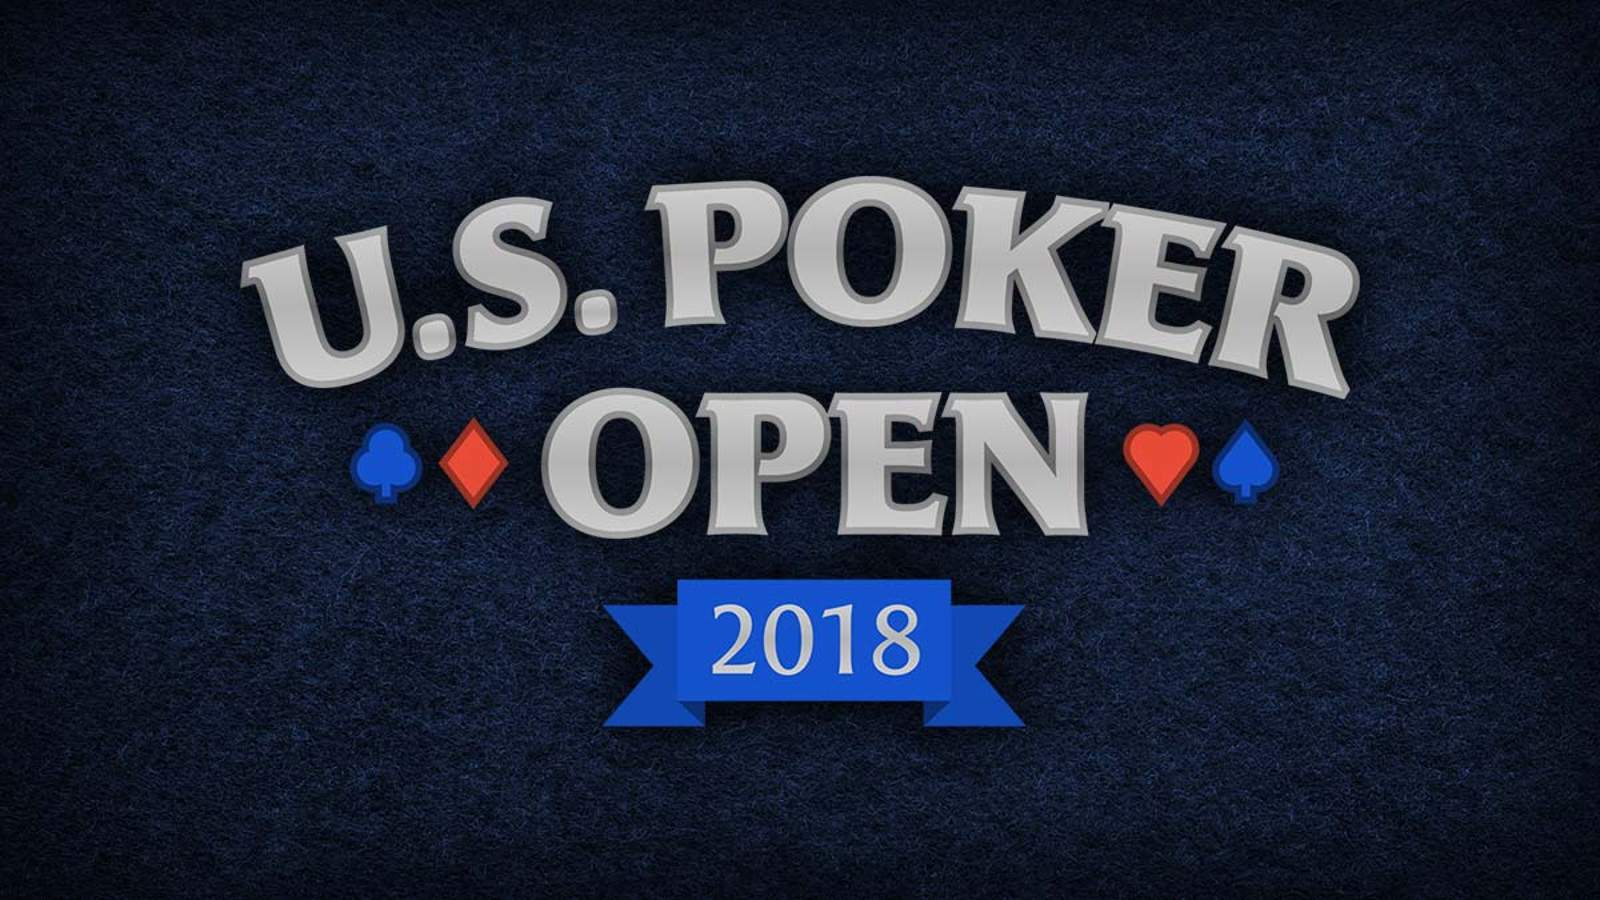 Poker Central Announces U.S. Poker Open on PokerGO